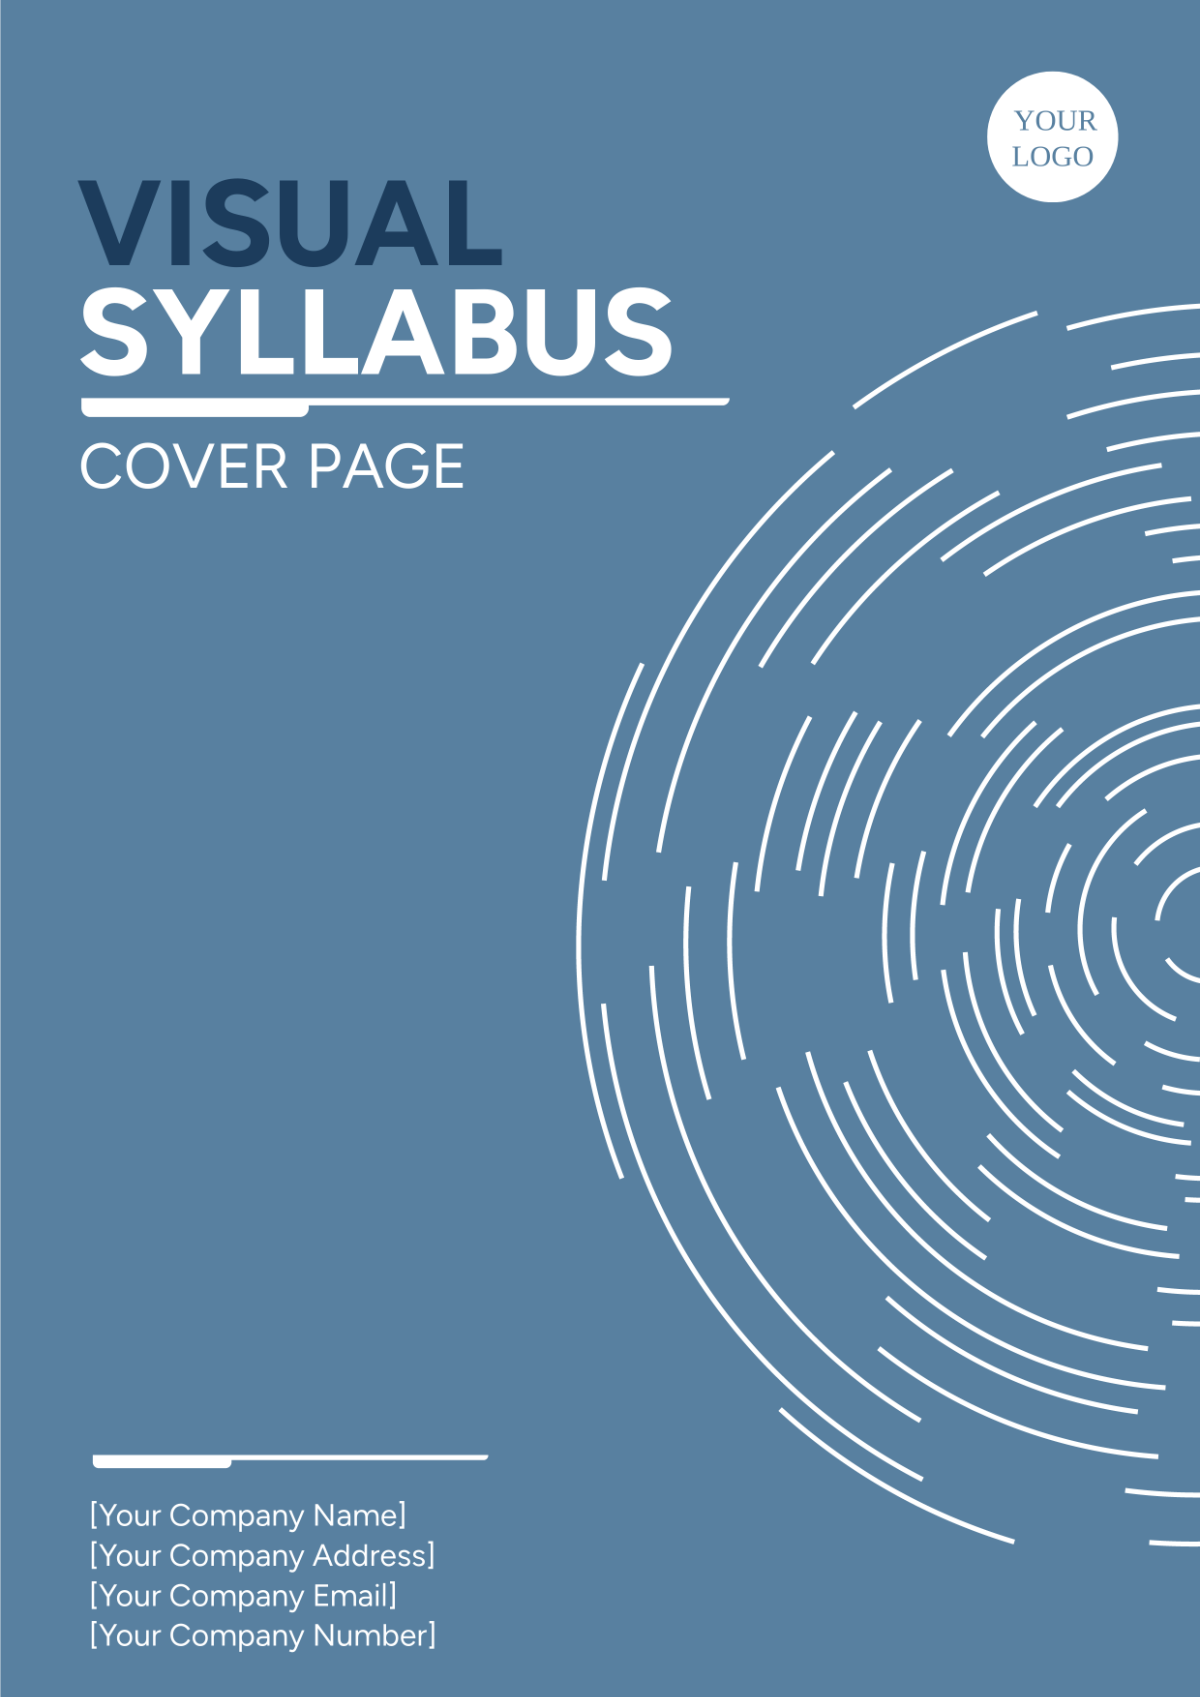 Visual Syllabus Cover Page